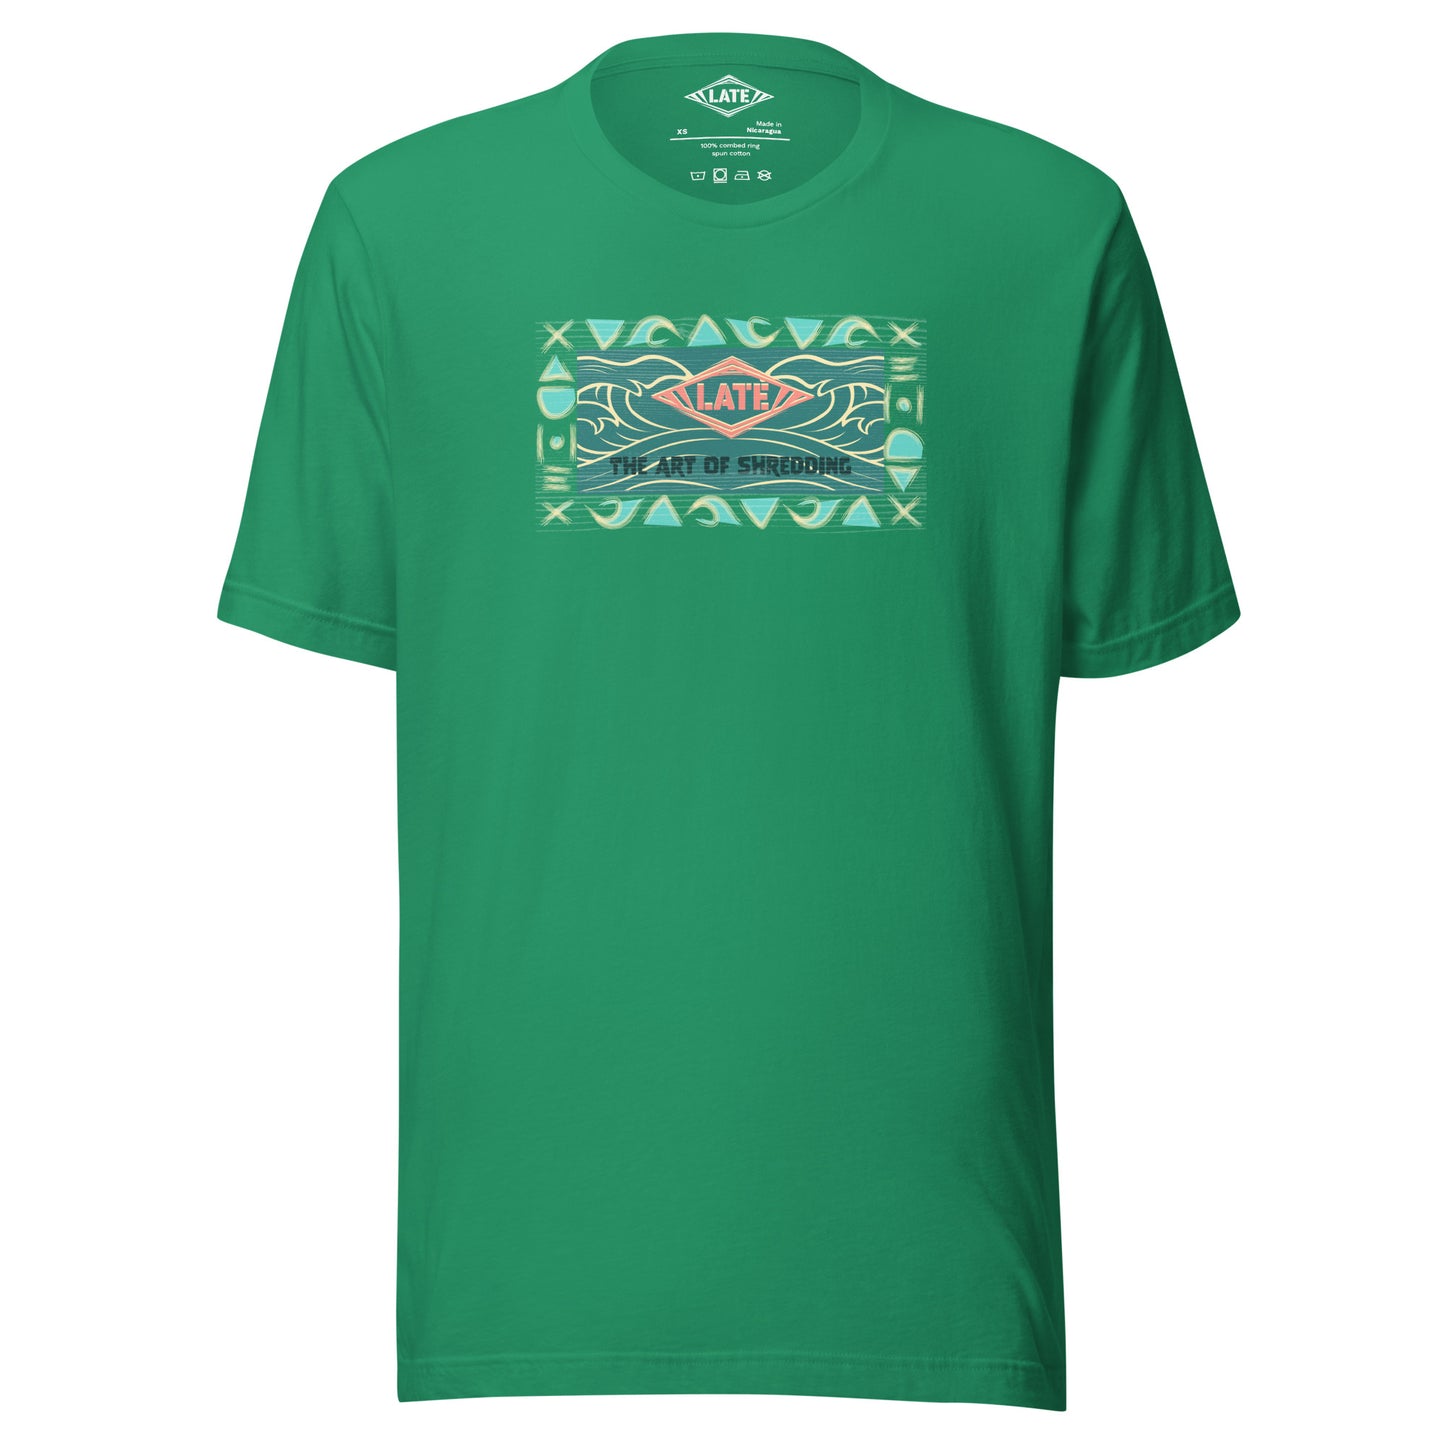 T-Shirt rétro surfwear art of shredding, logo Late surfshop motifs de vagues creuses, et dom-tom, t-shirt unisex vert kelly